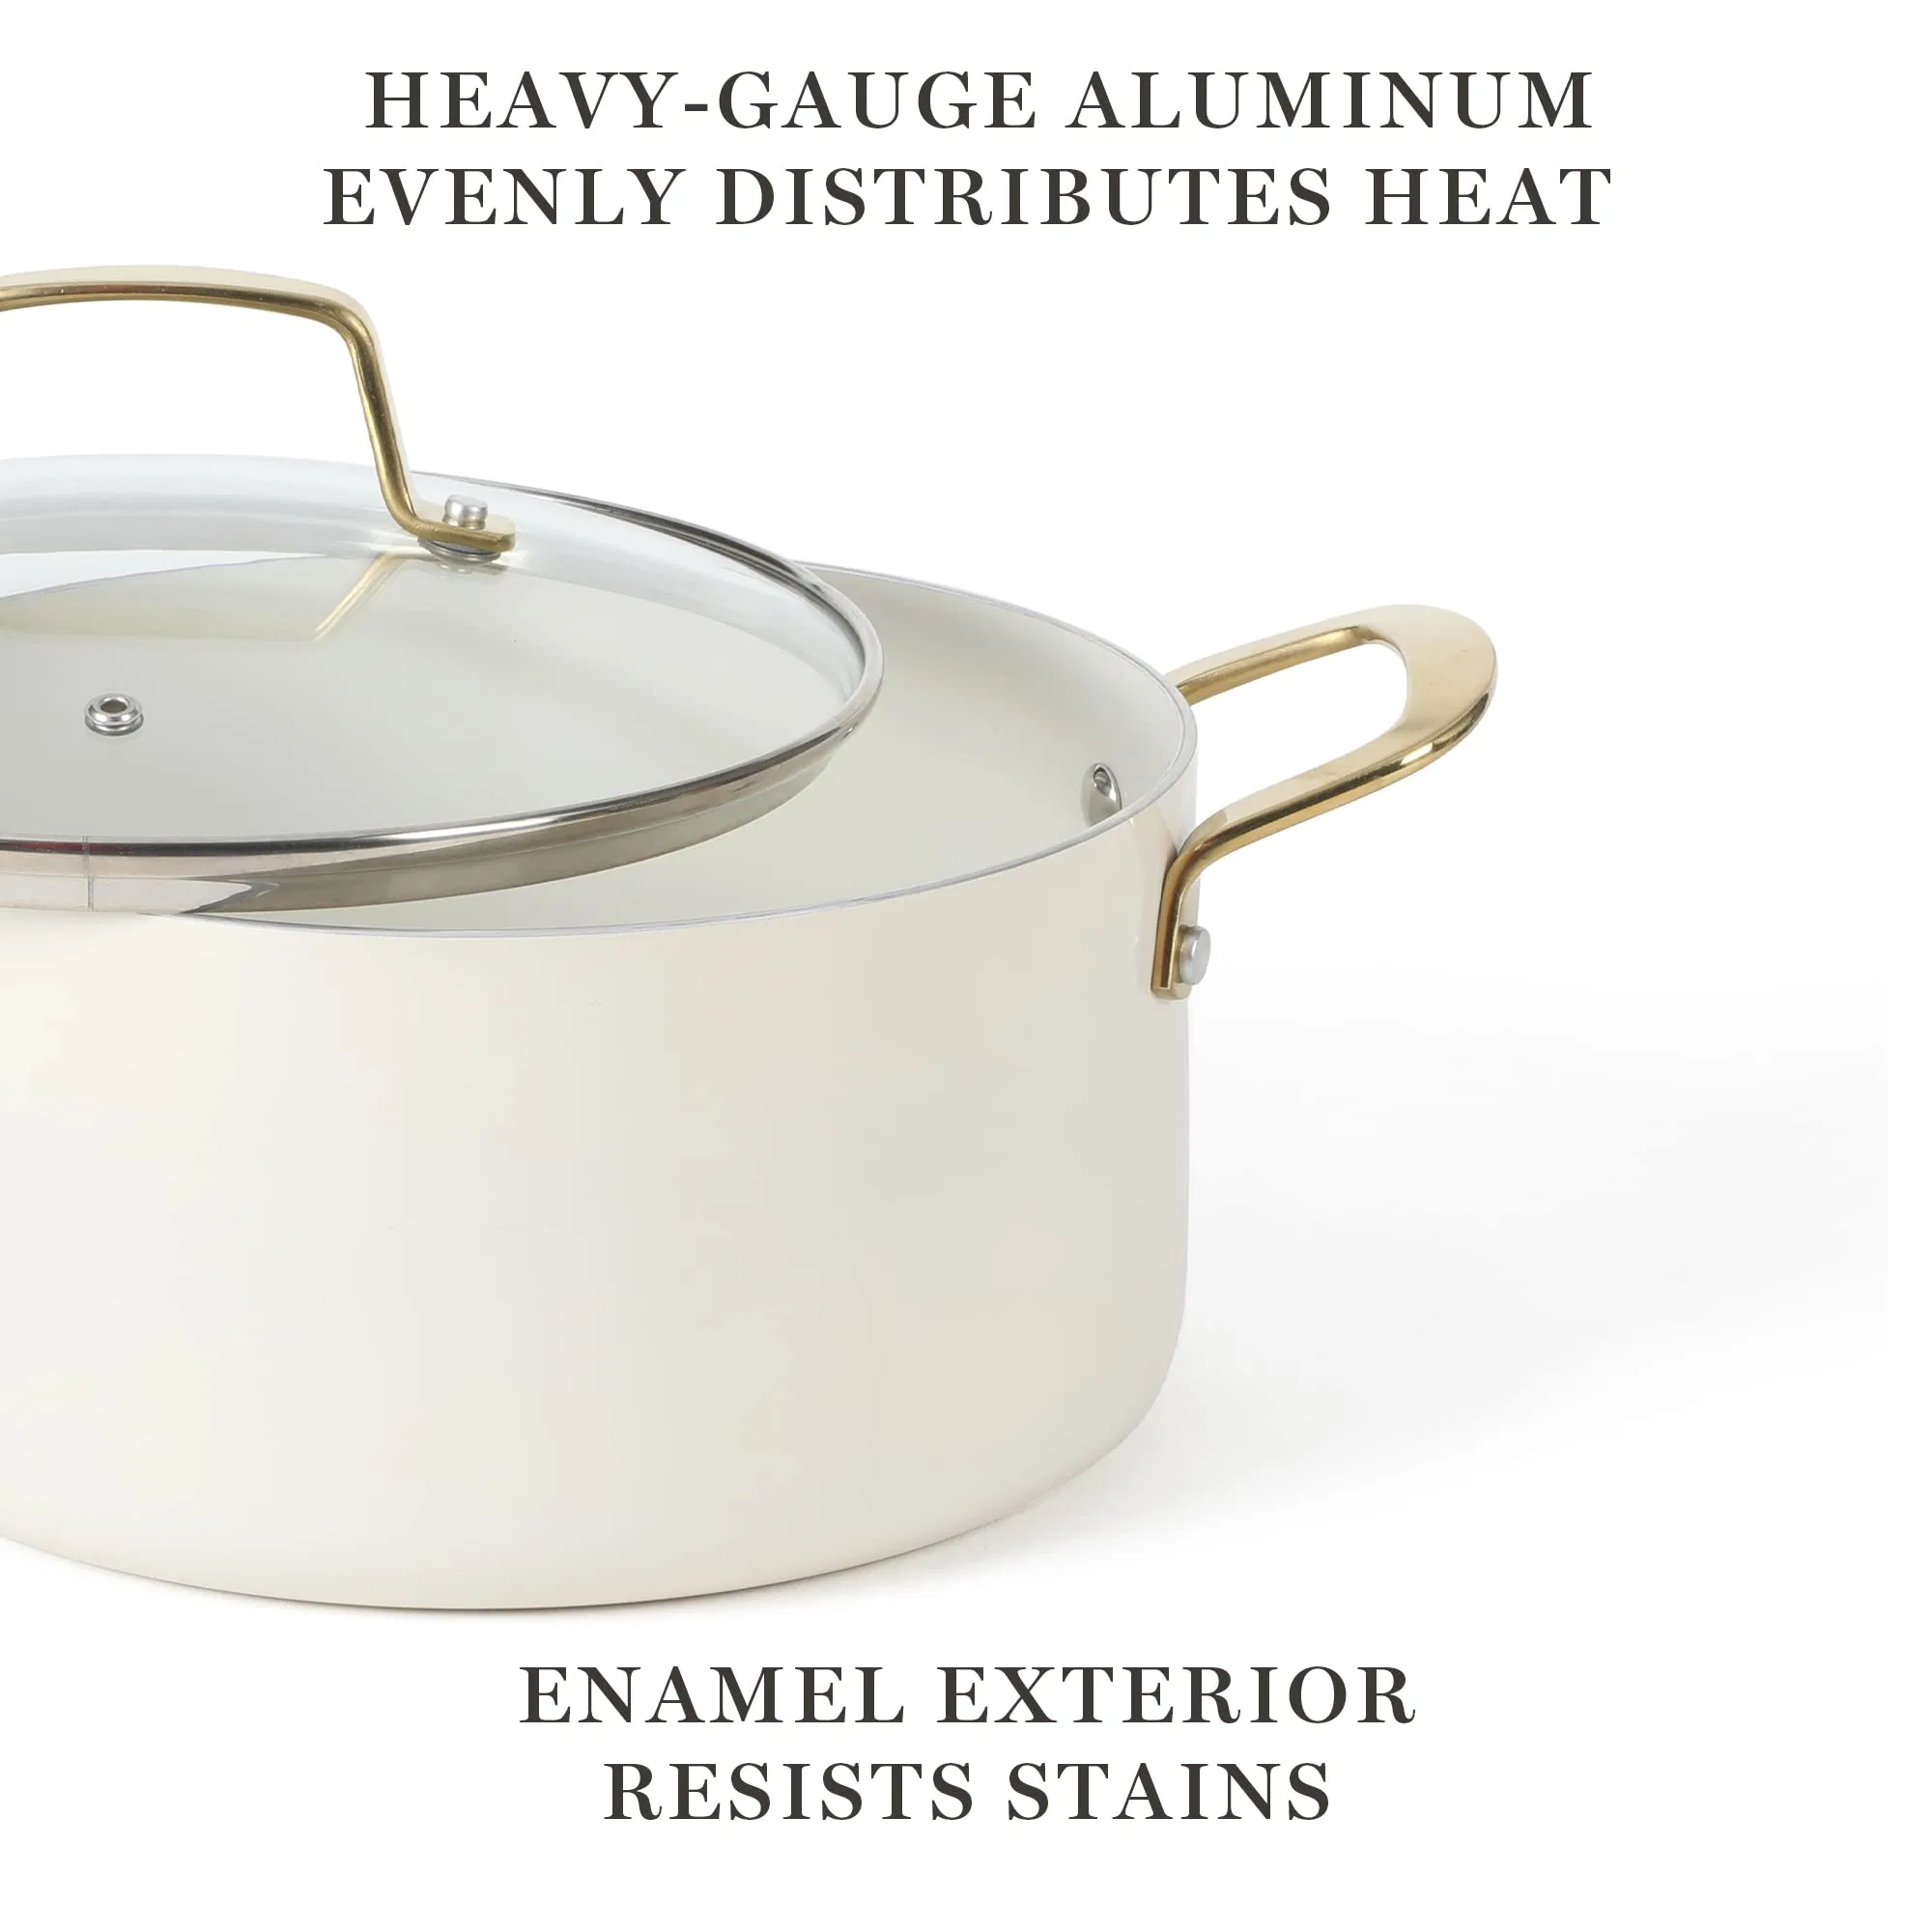 Conjunto de utensílios de cozinha em alumínio esmaltado com interior cerâmico antiaderente de alta qualidade, livre de PFA.